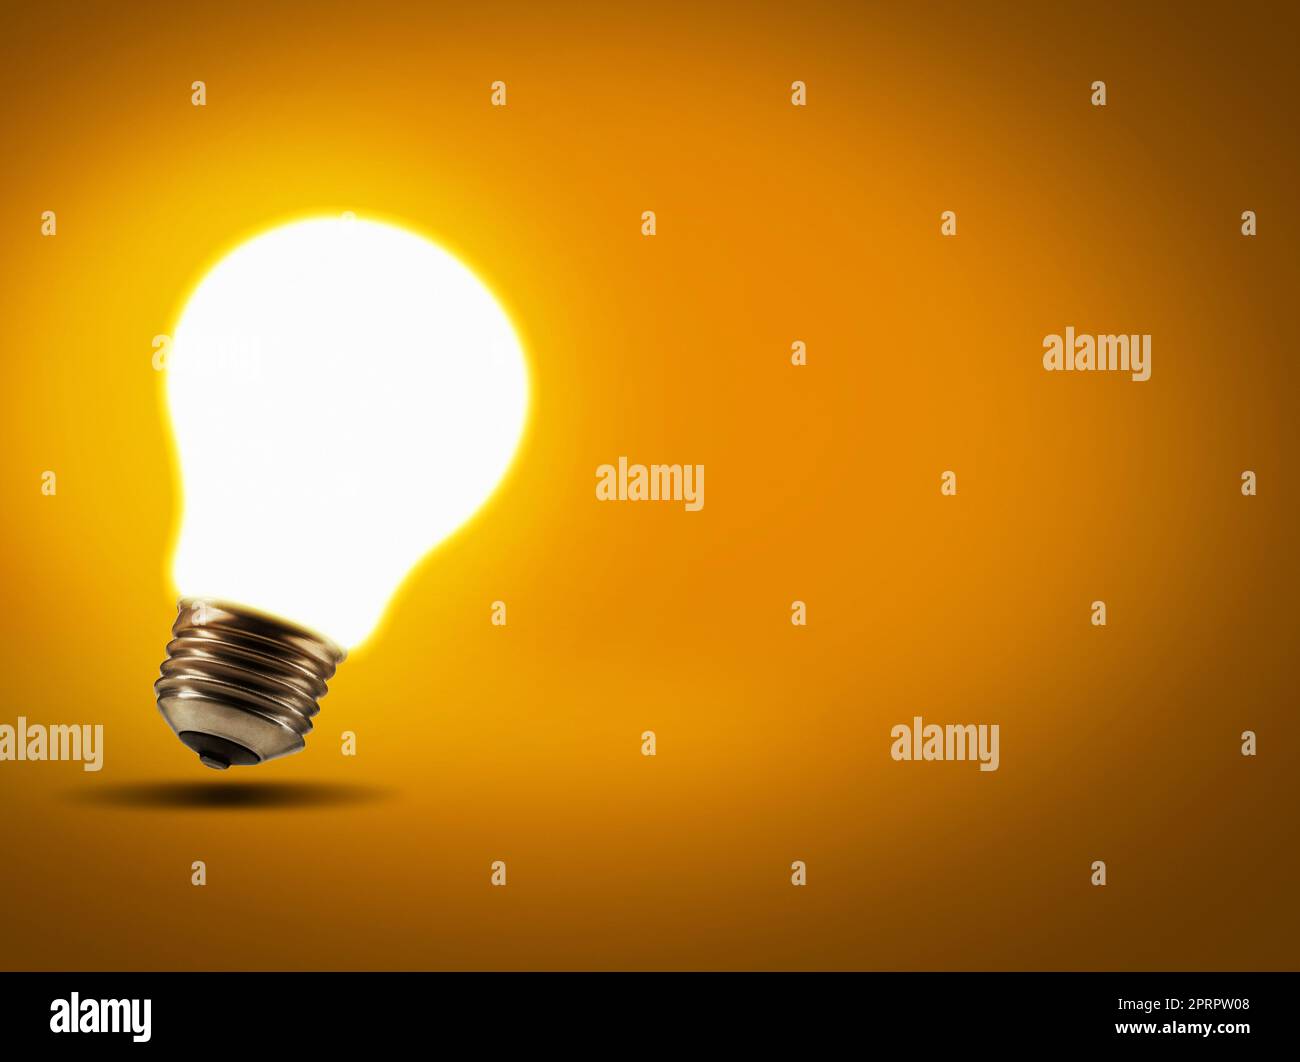 The classic lightbulb moment. Studio shot of a lightbulb against an orange background. Stock Photo